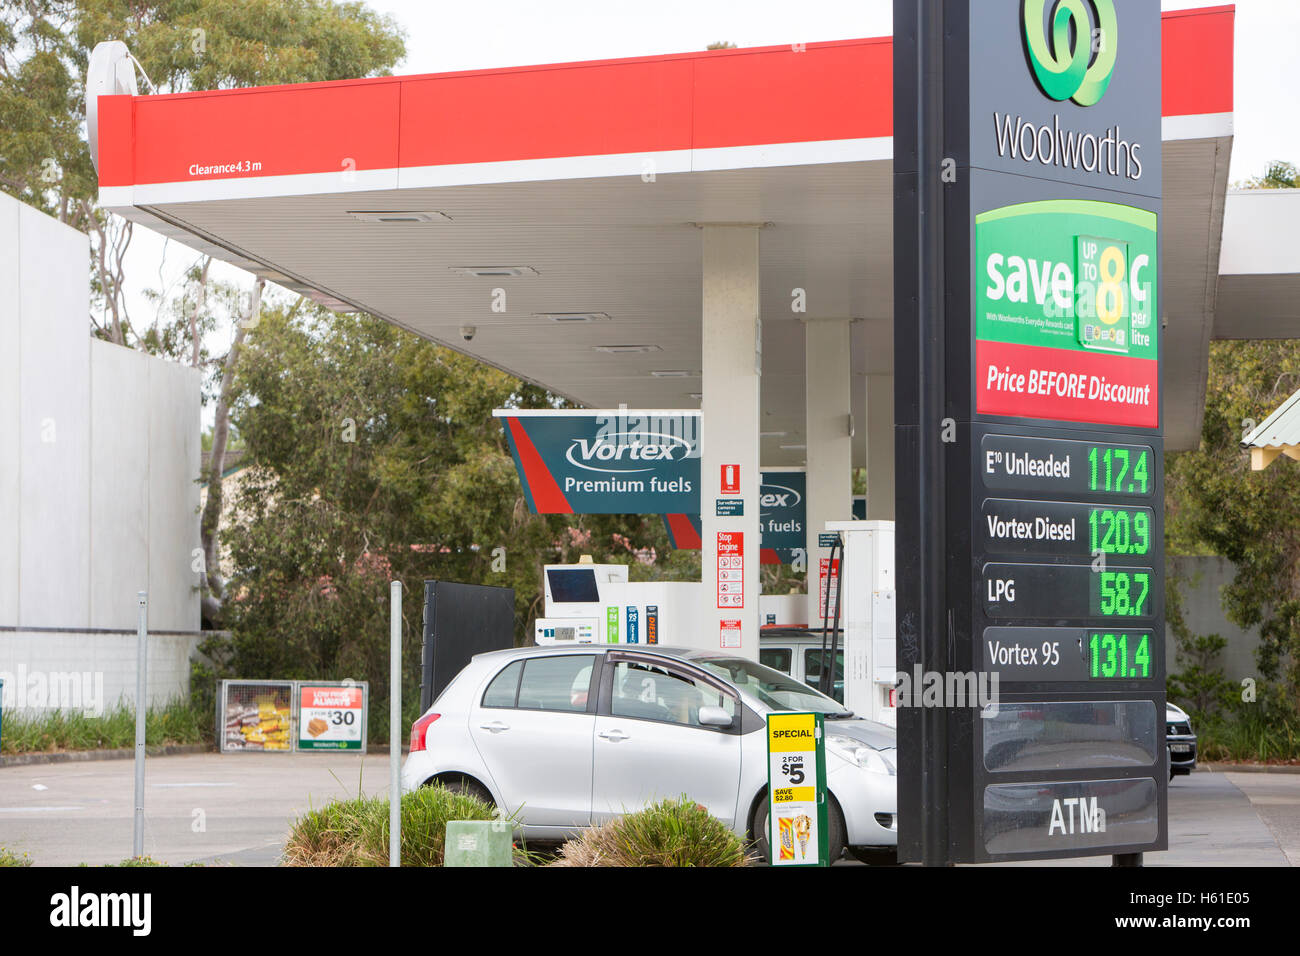 Caltex Woolworths gebrandmarkt Kraftstoff Benzin Tankstelle in North Sydney, Australien Stockfoto